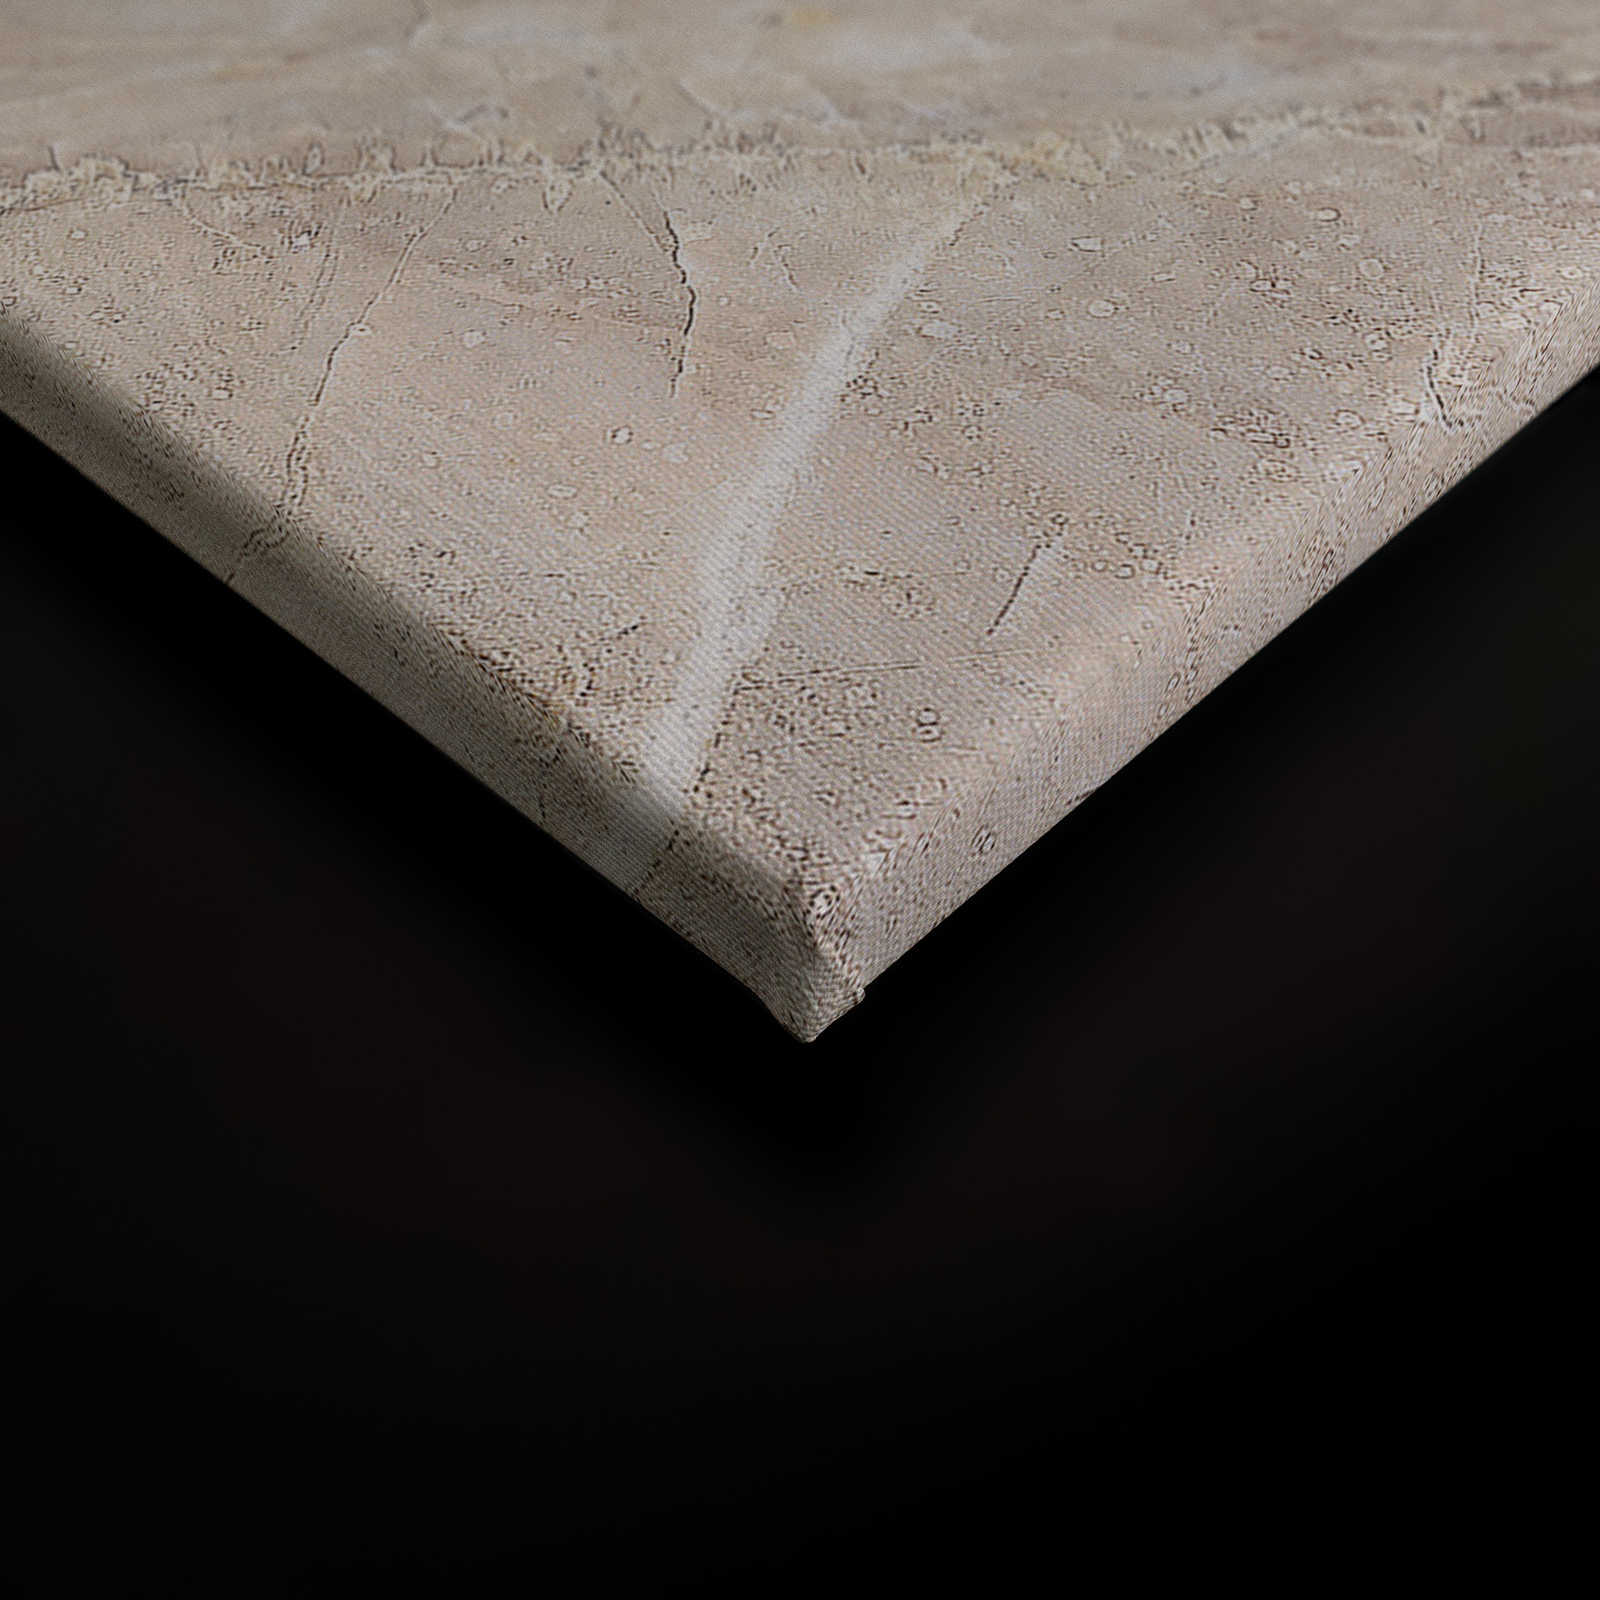             Quadro su tela con aspetto marmoreo Primo piano - 0,90 m x 0,60 m
        